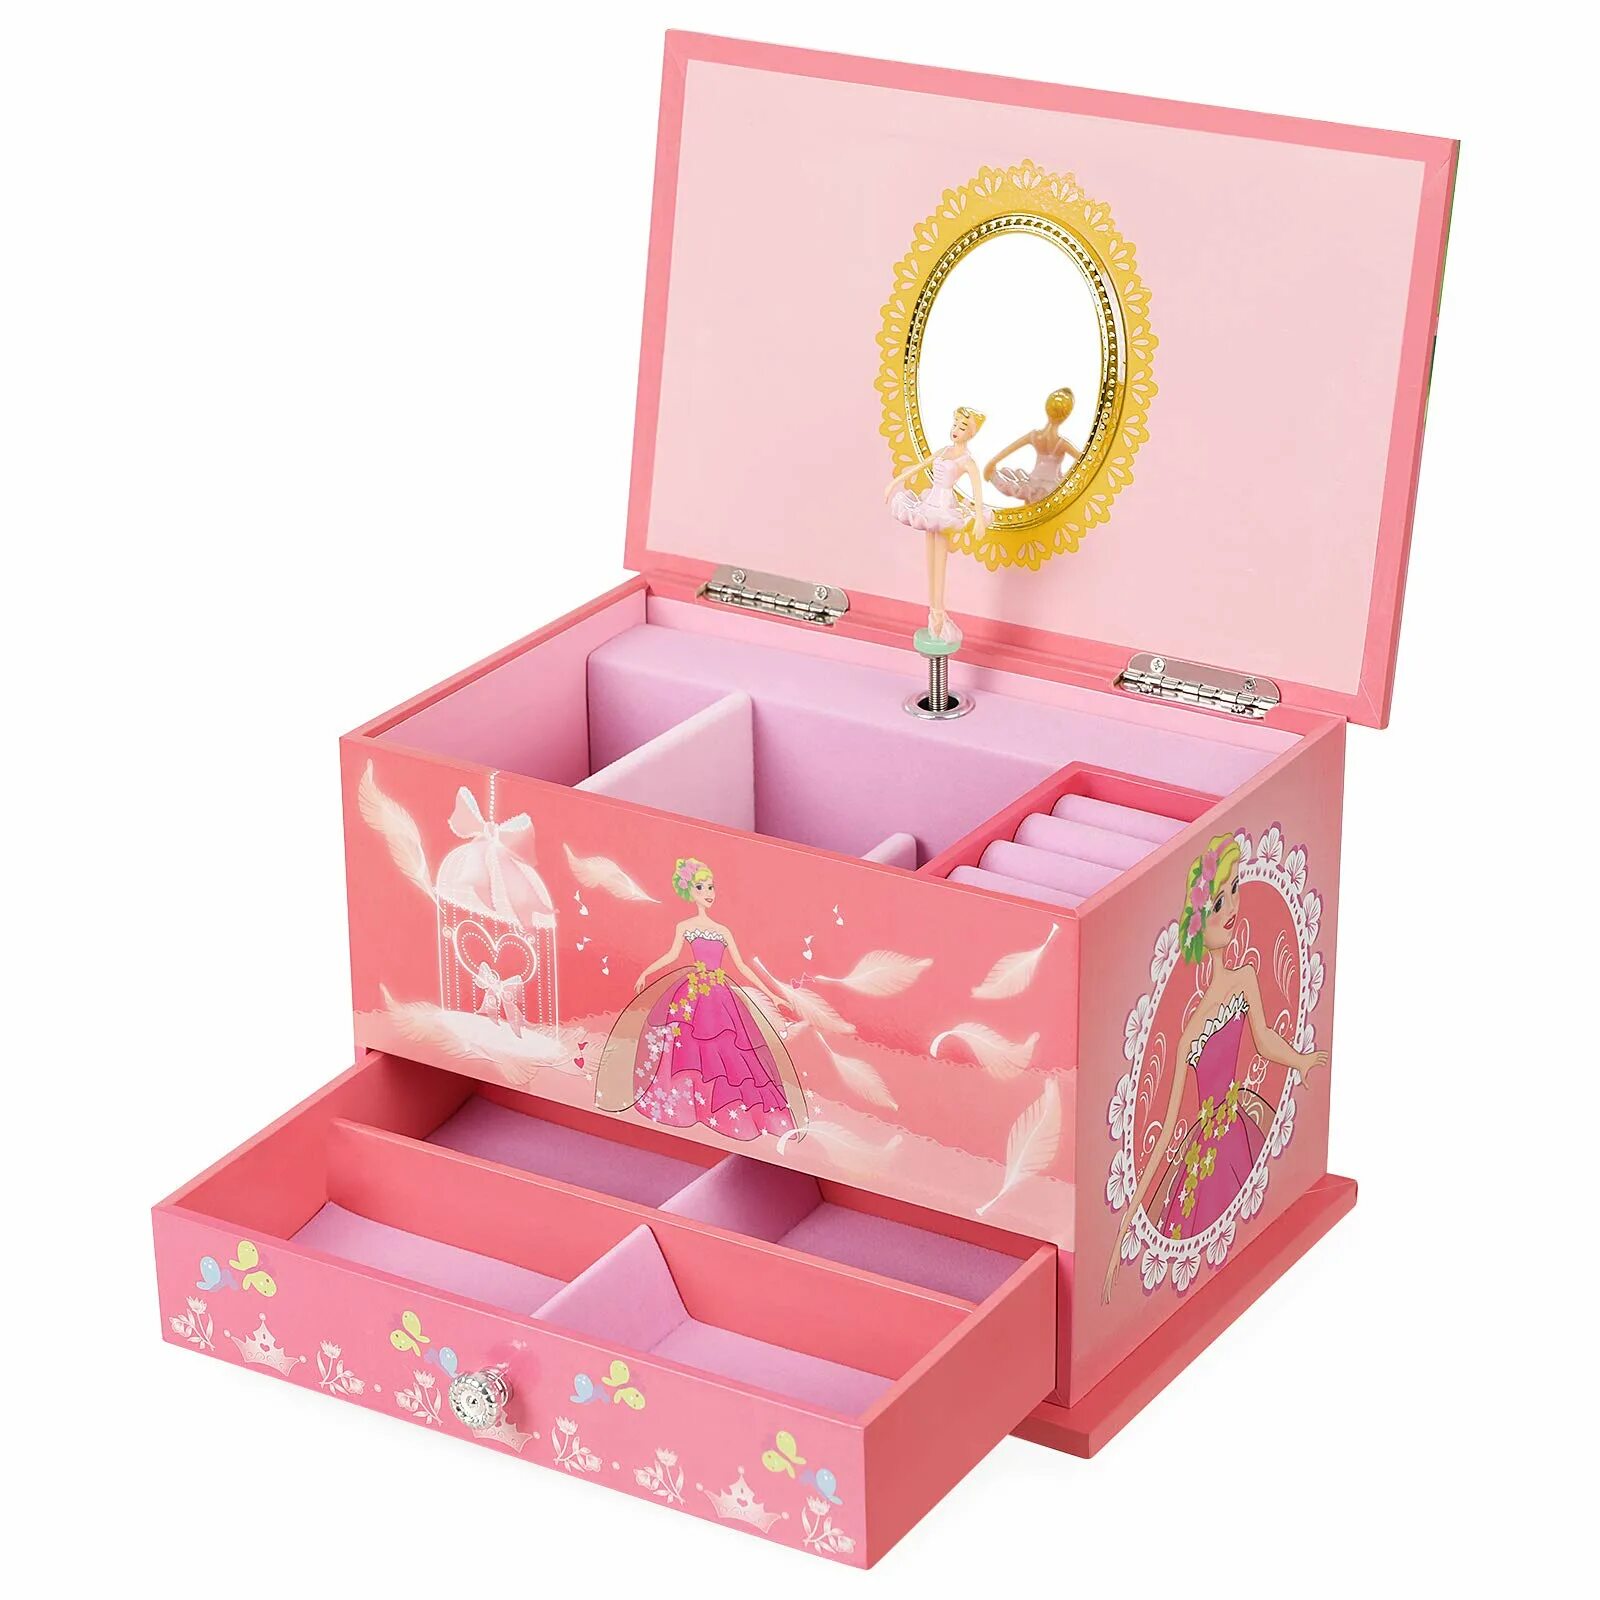 Лучший подарок на день рождения девочки. Музыкальная шкатулка сундучок Musical jewerly Box Shenzhen Toys д54155. Подарок для девочки. Подарок девочке на 7 лет. Подарок на новый год девочке.